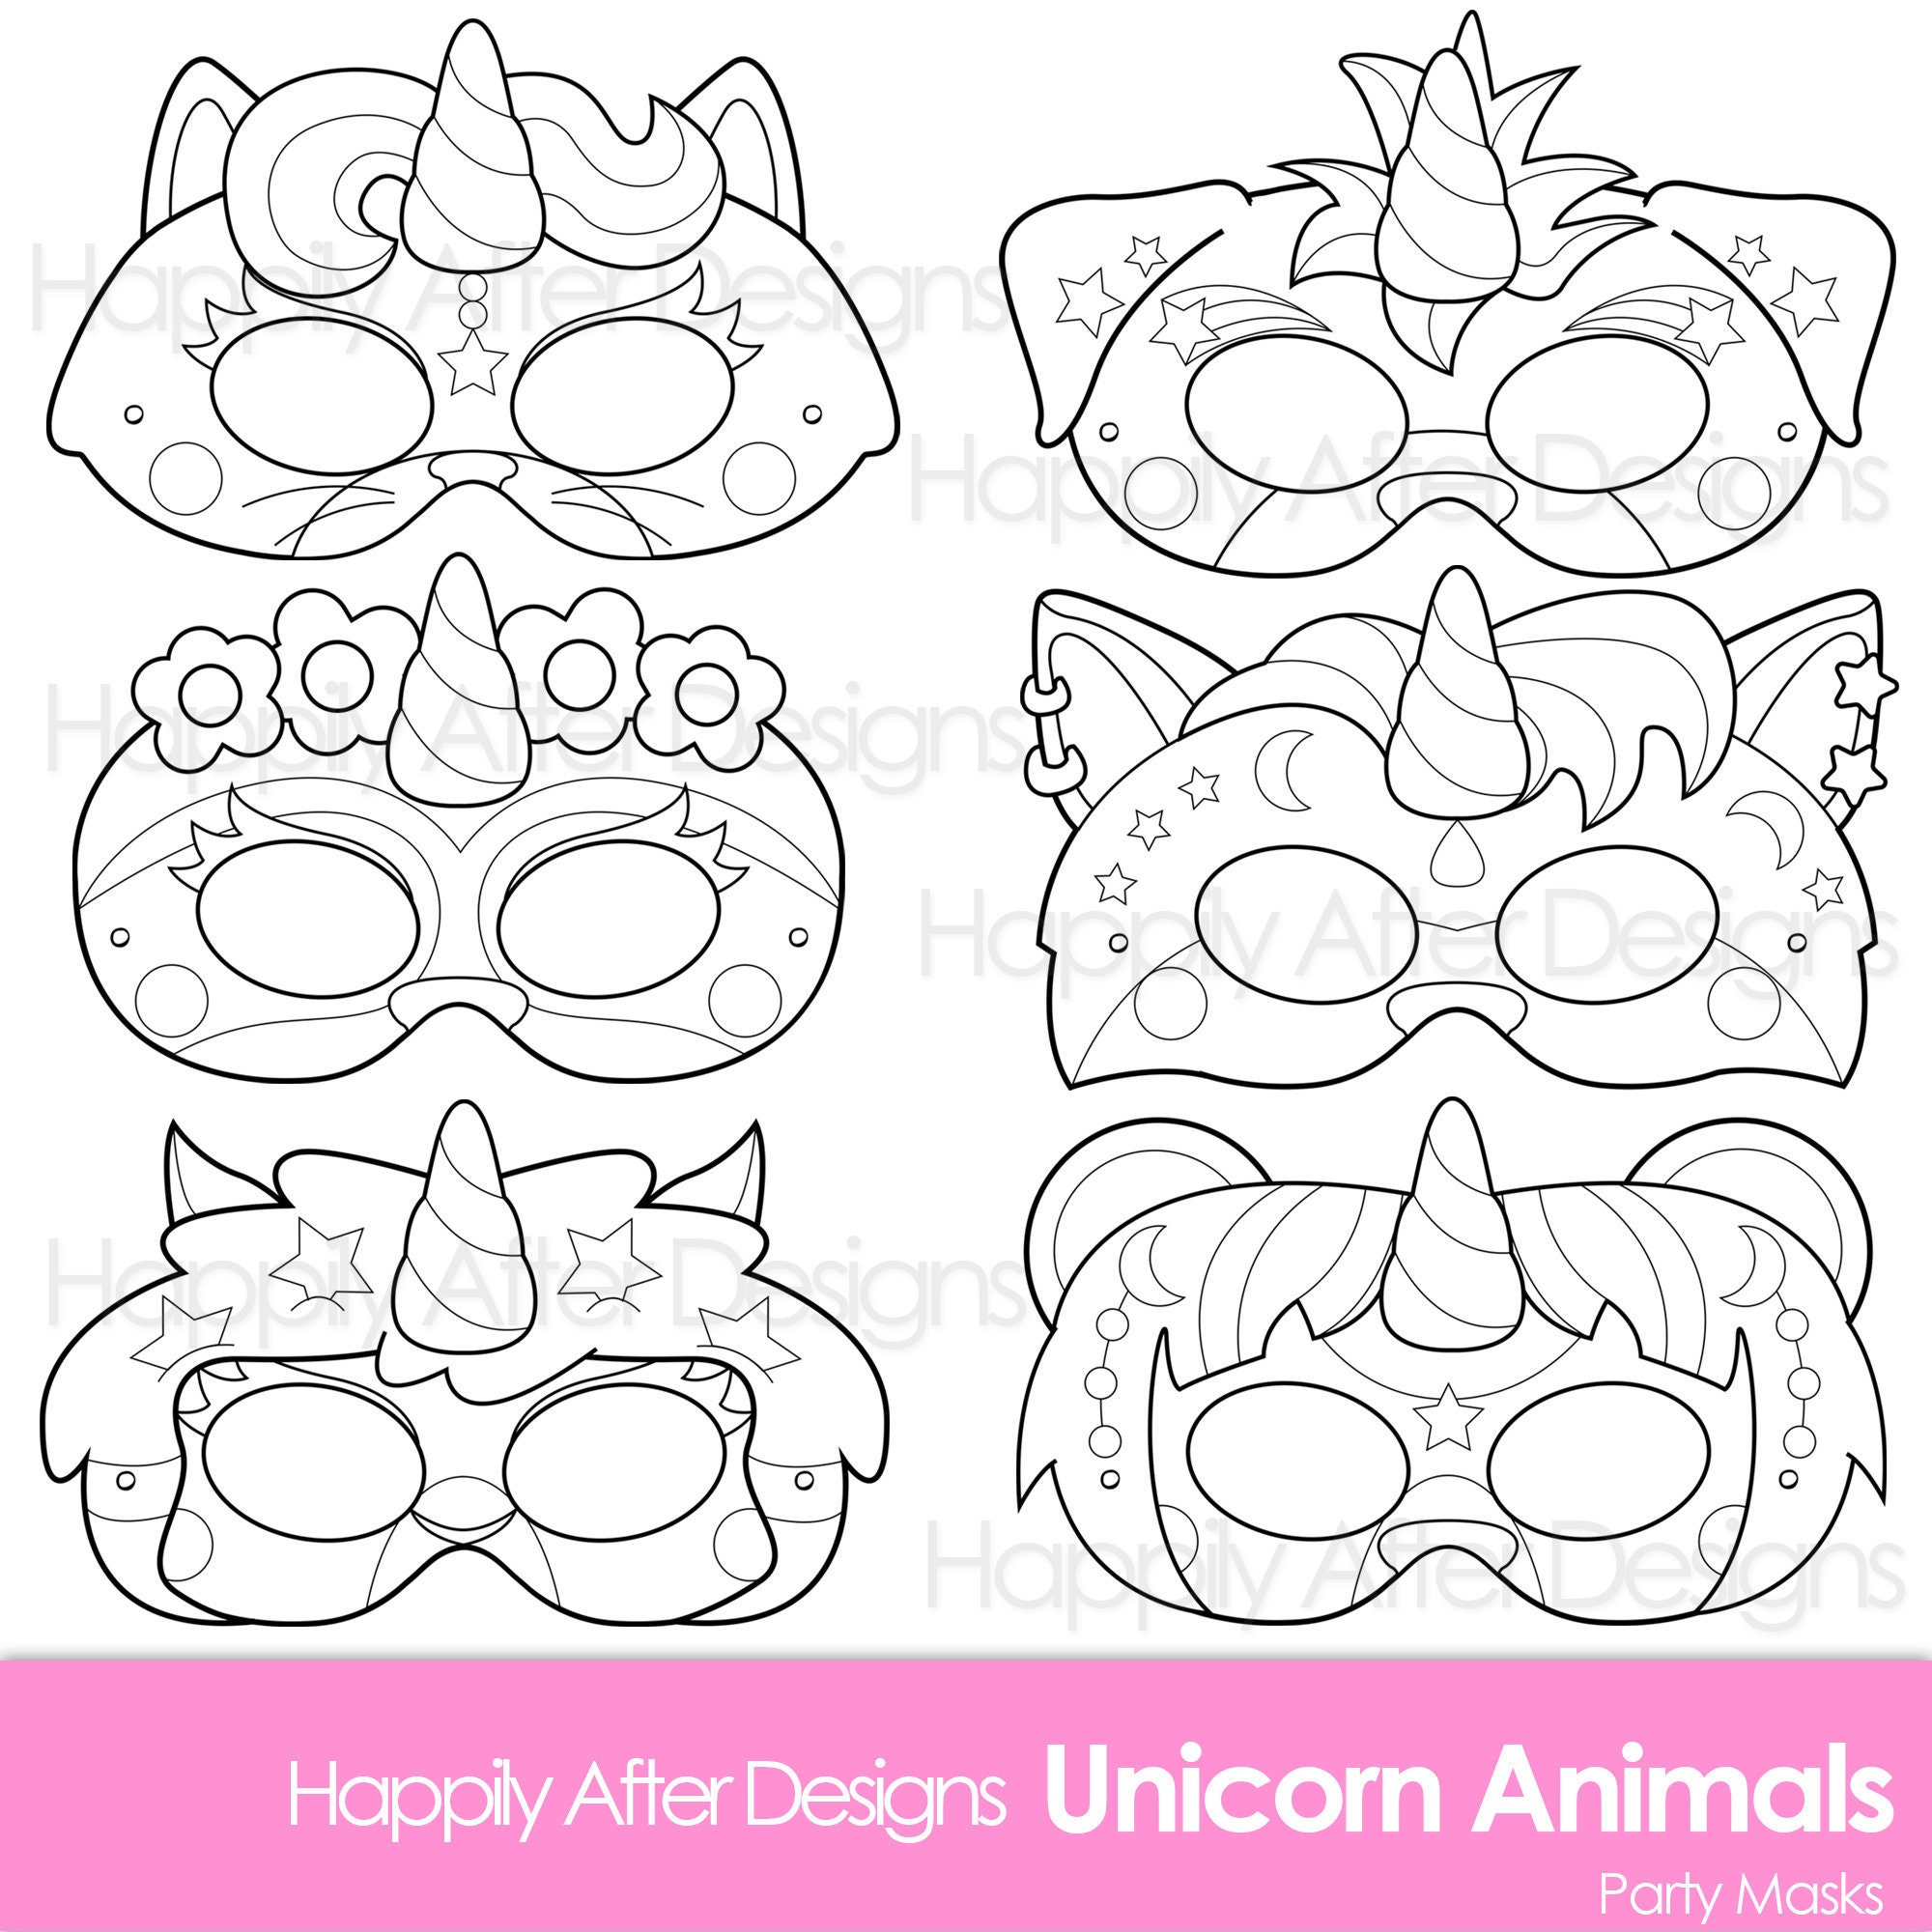 Unicorn Animals Printable Coloring Masks unicorn mask cat | Etsy